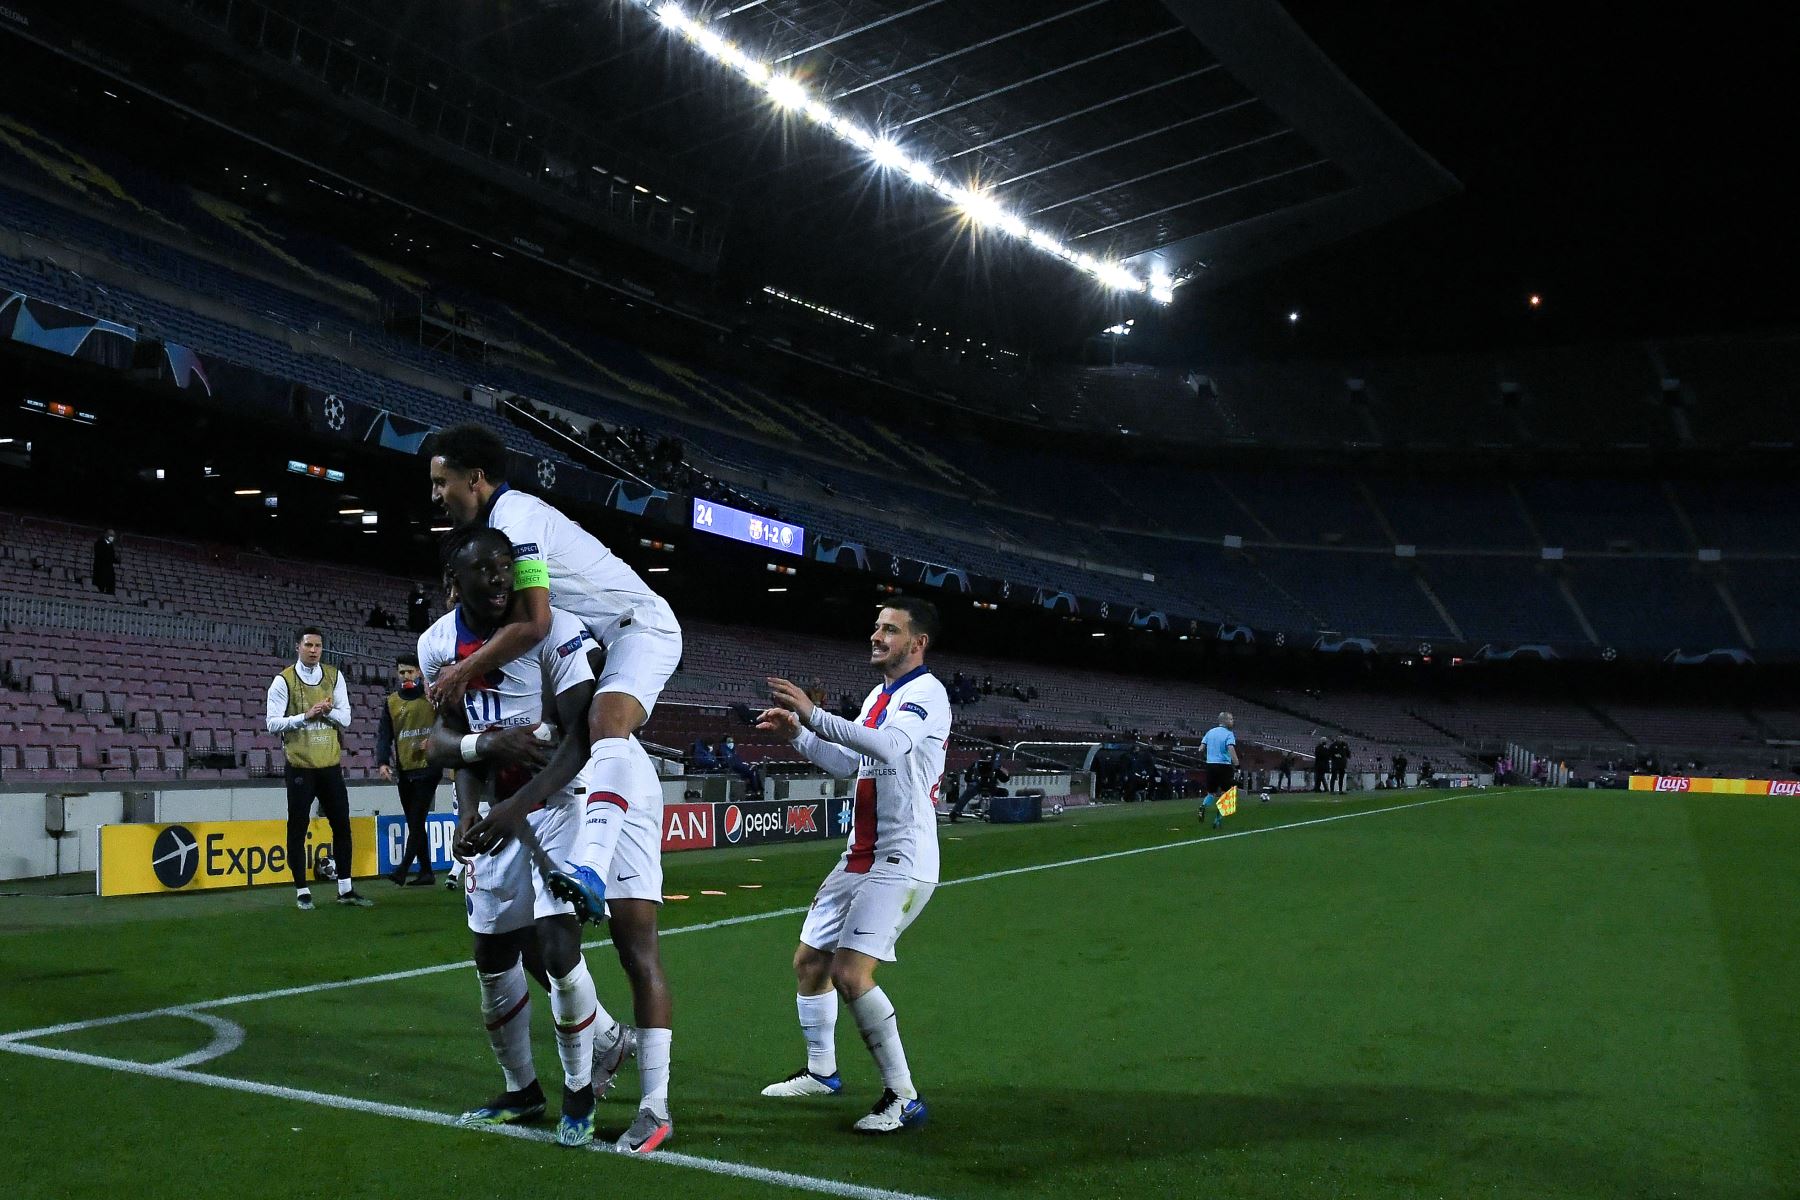 El delantero italiano del Paris Saint-Germain Moise Kean celebra con sus compañeros de equipo después de anotar el tercer gol de su equipo durante los octavos de final de la Liga de Campeones de la UEFA, partido de ida entre el FC Barcelona y el Paris Saint-Germain FC.
Foto: AFP